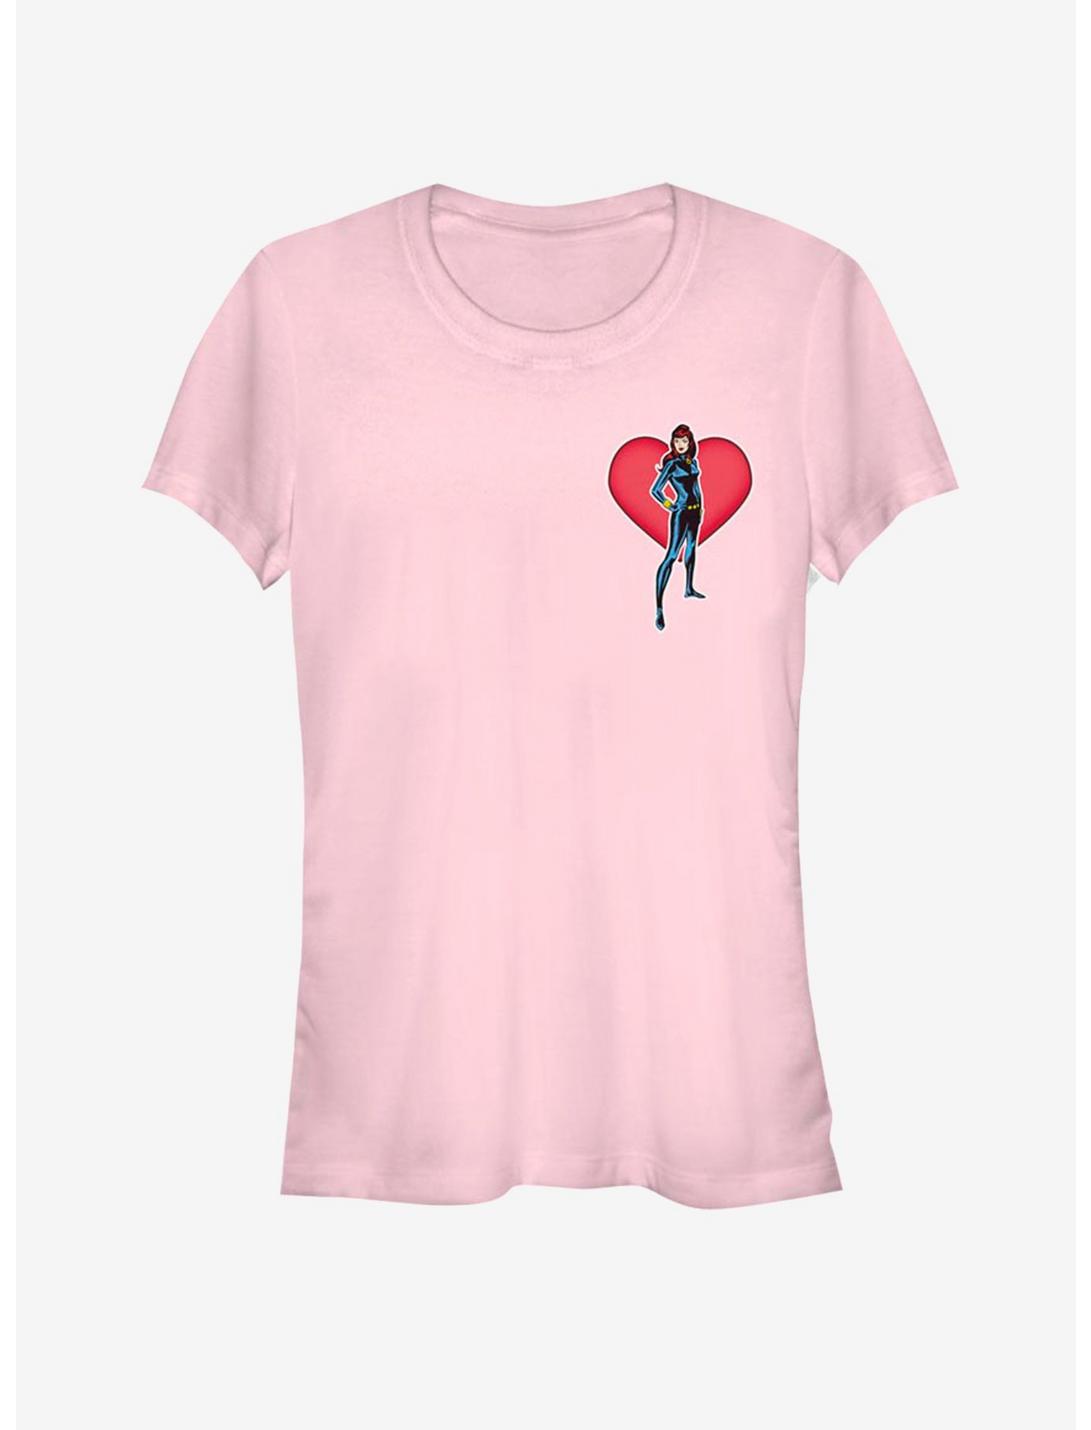 Black Widow Heart Girls T-Shirt, LIGHT PINK, hi-res